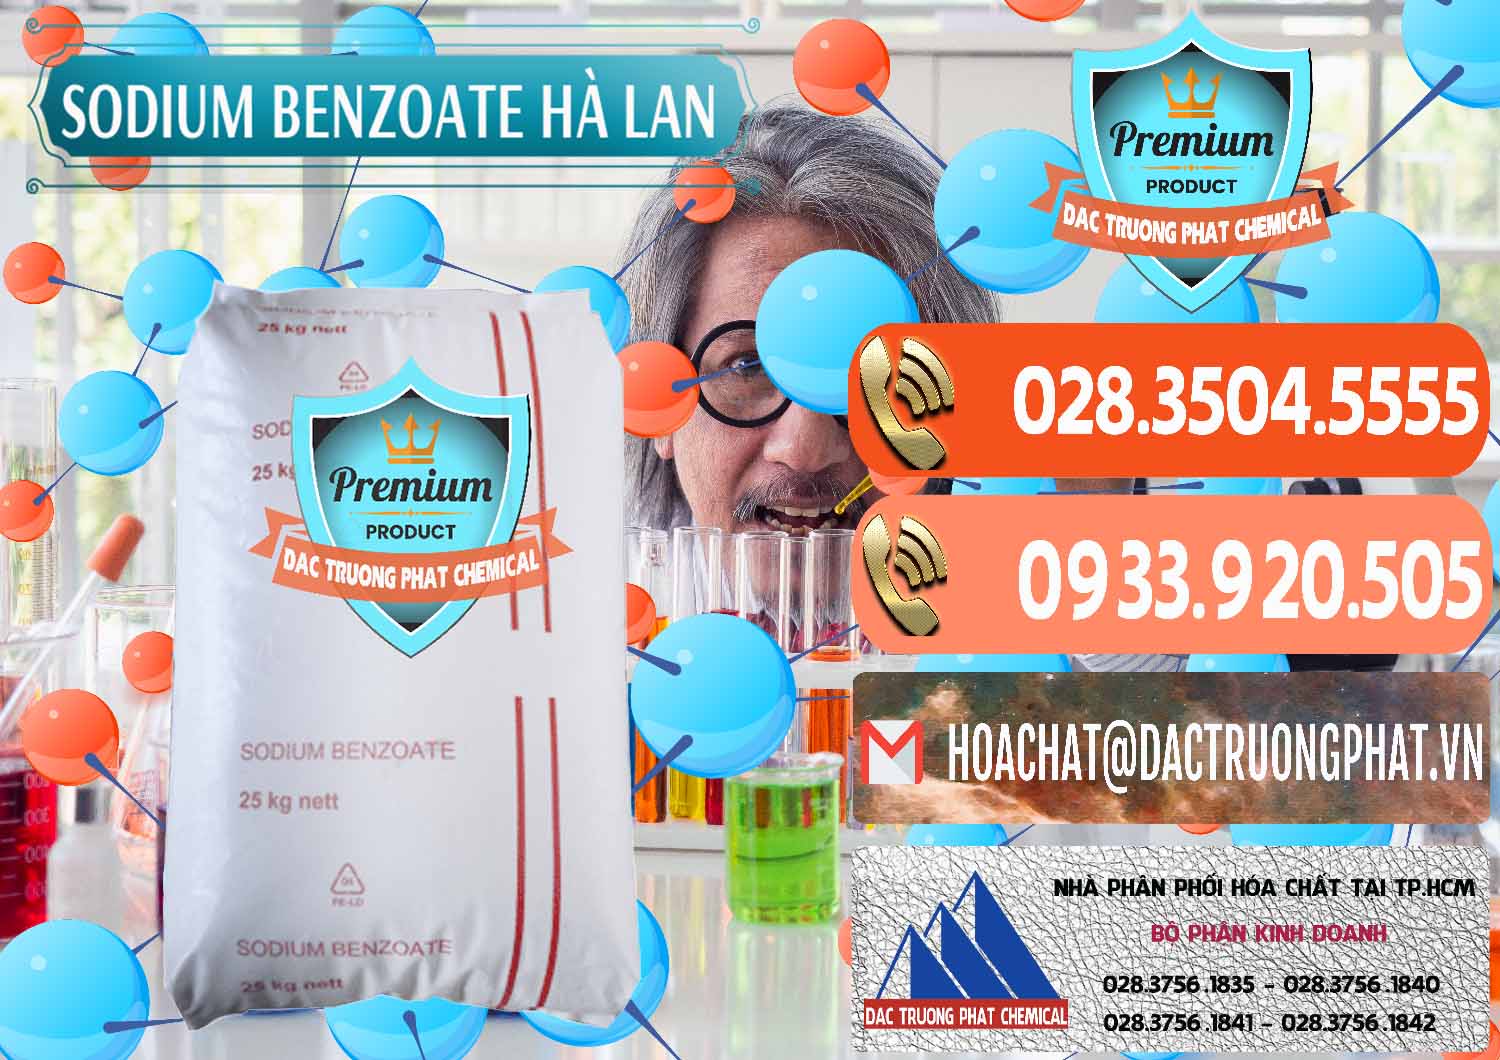 Nơi chuyên phân phối & bán Sodium Benzoate - Mốc Bột Chữ Cam Hà Lan Netherlands - 0360 - Công ty chuyên cung cấp và kinh doanh hóa chất tại TP.HCM - hoachatmientay.com